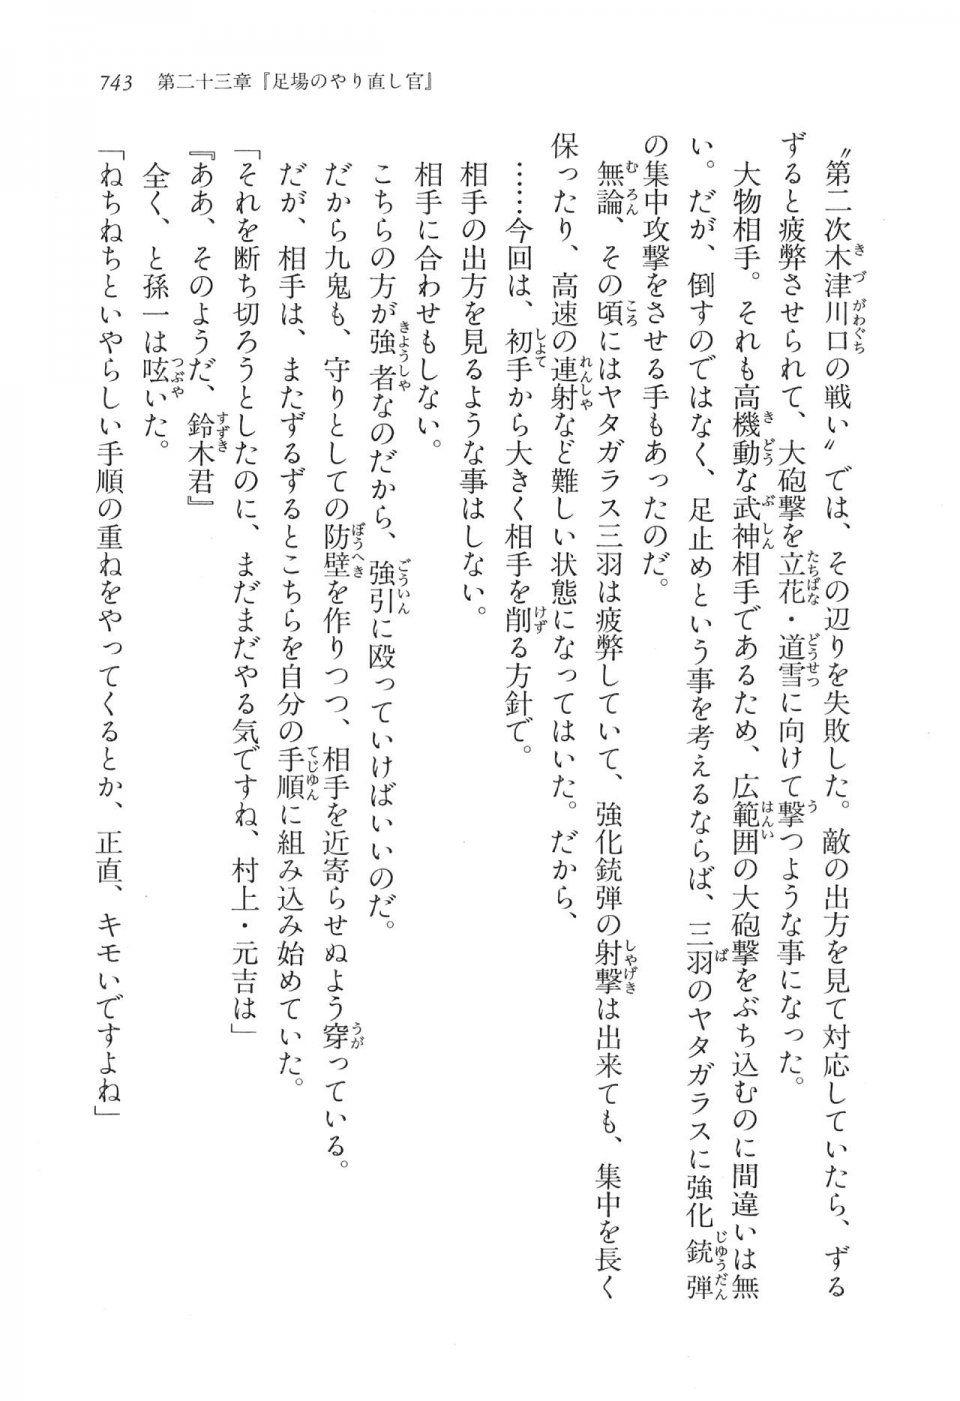 Kyoukai Senjou no Horizon LN Vol 16(7A) - Photo #743